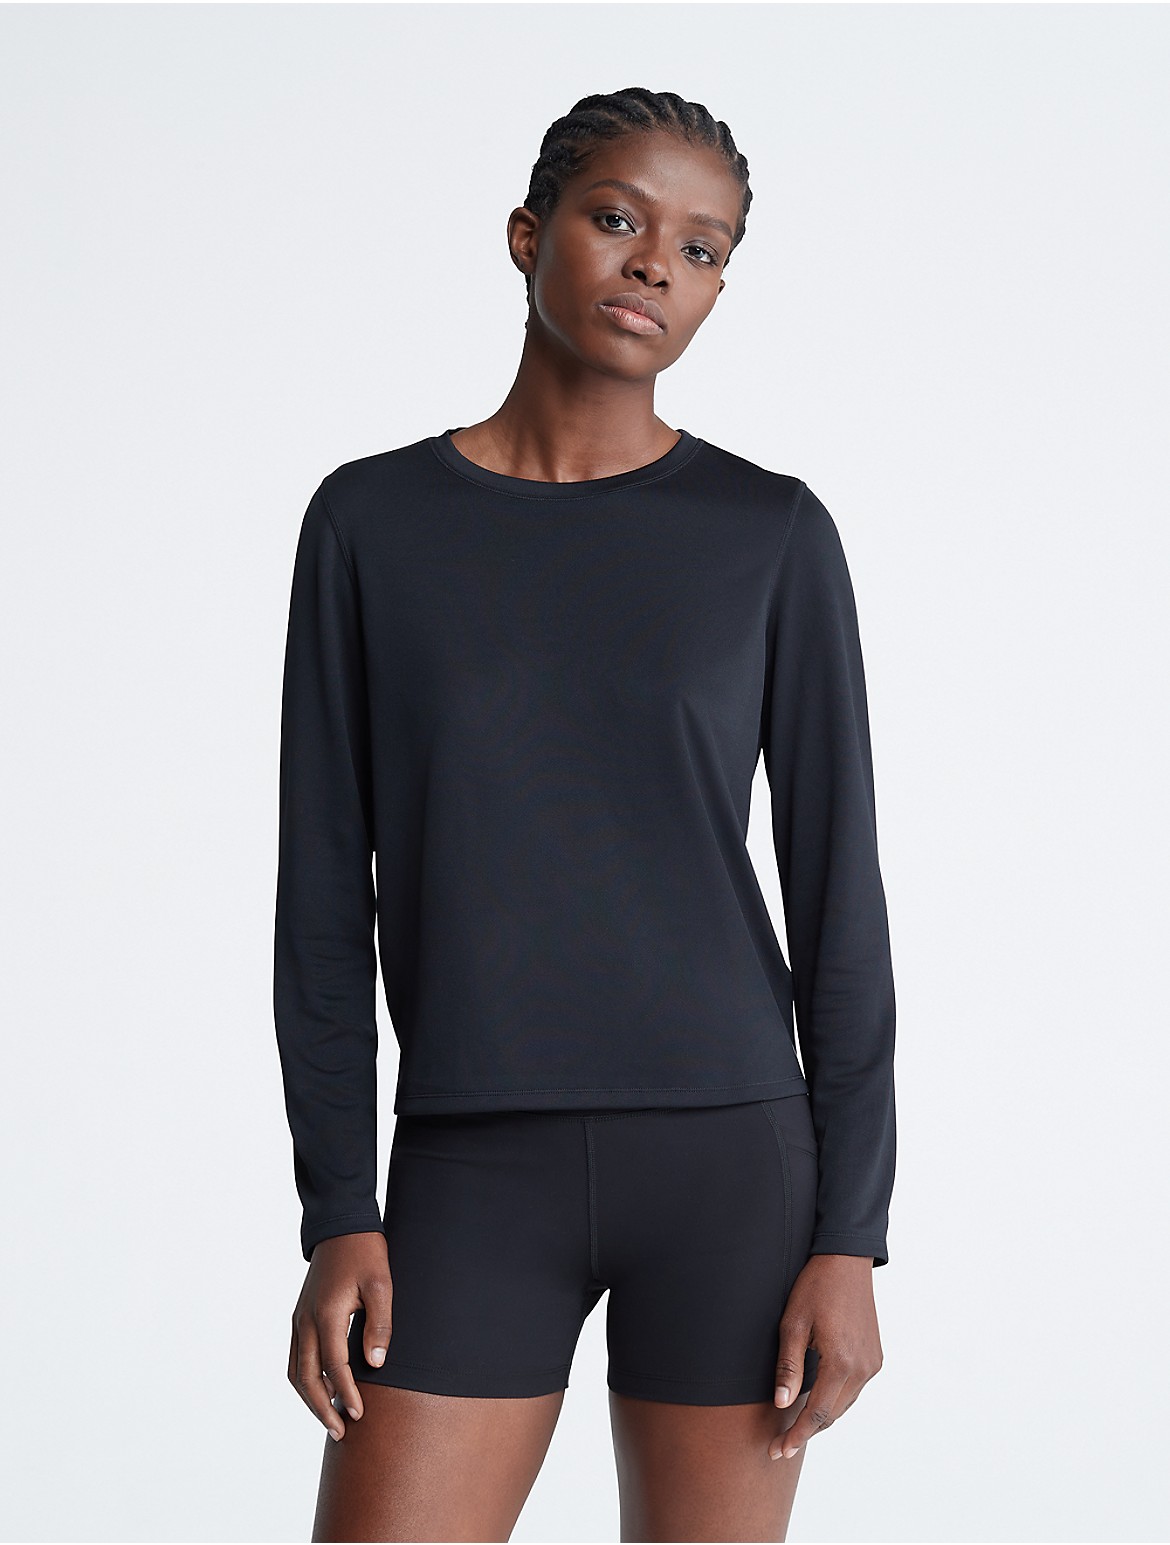 Calvin Klein Women's Performance Tech Pique T-Shirt - Black - XL